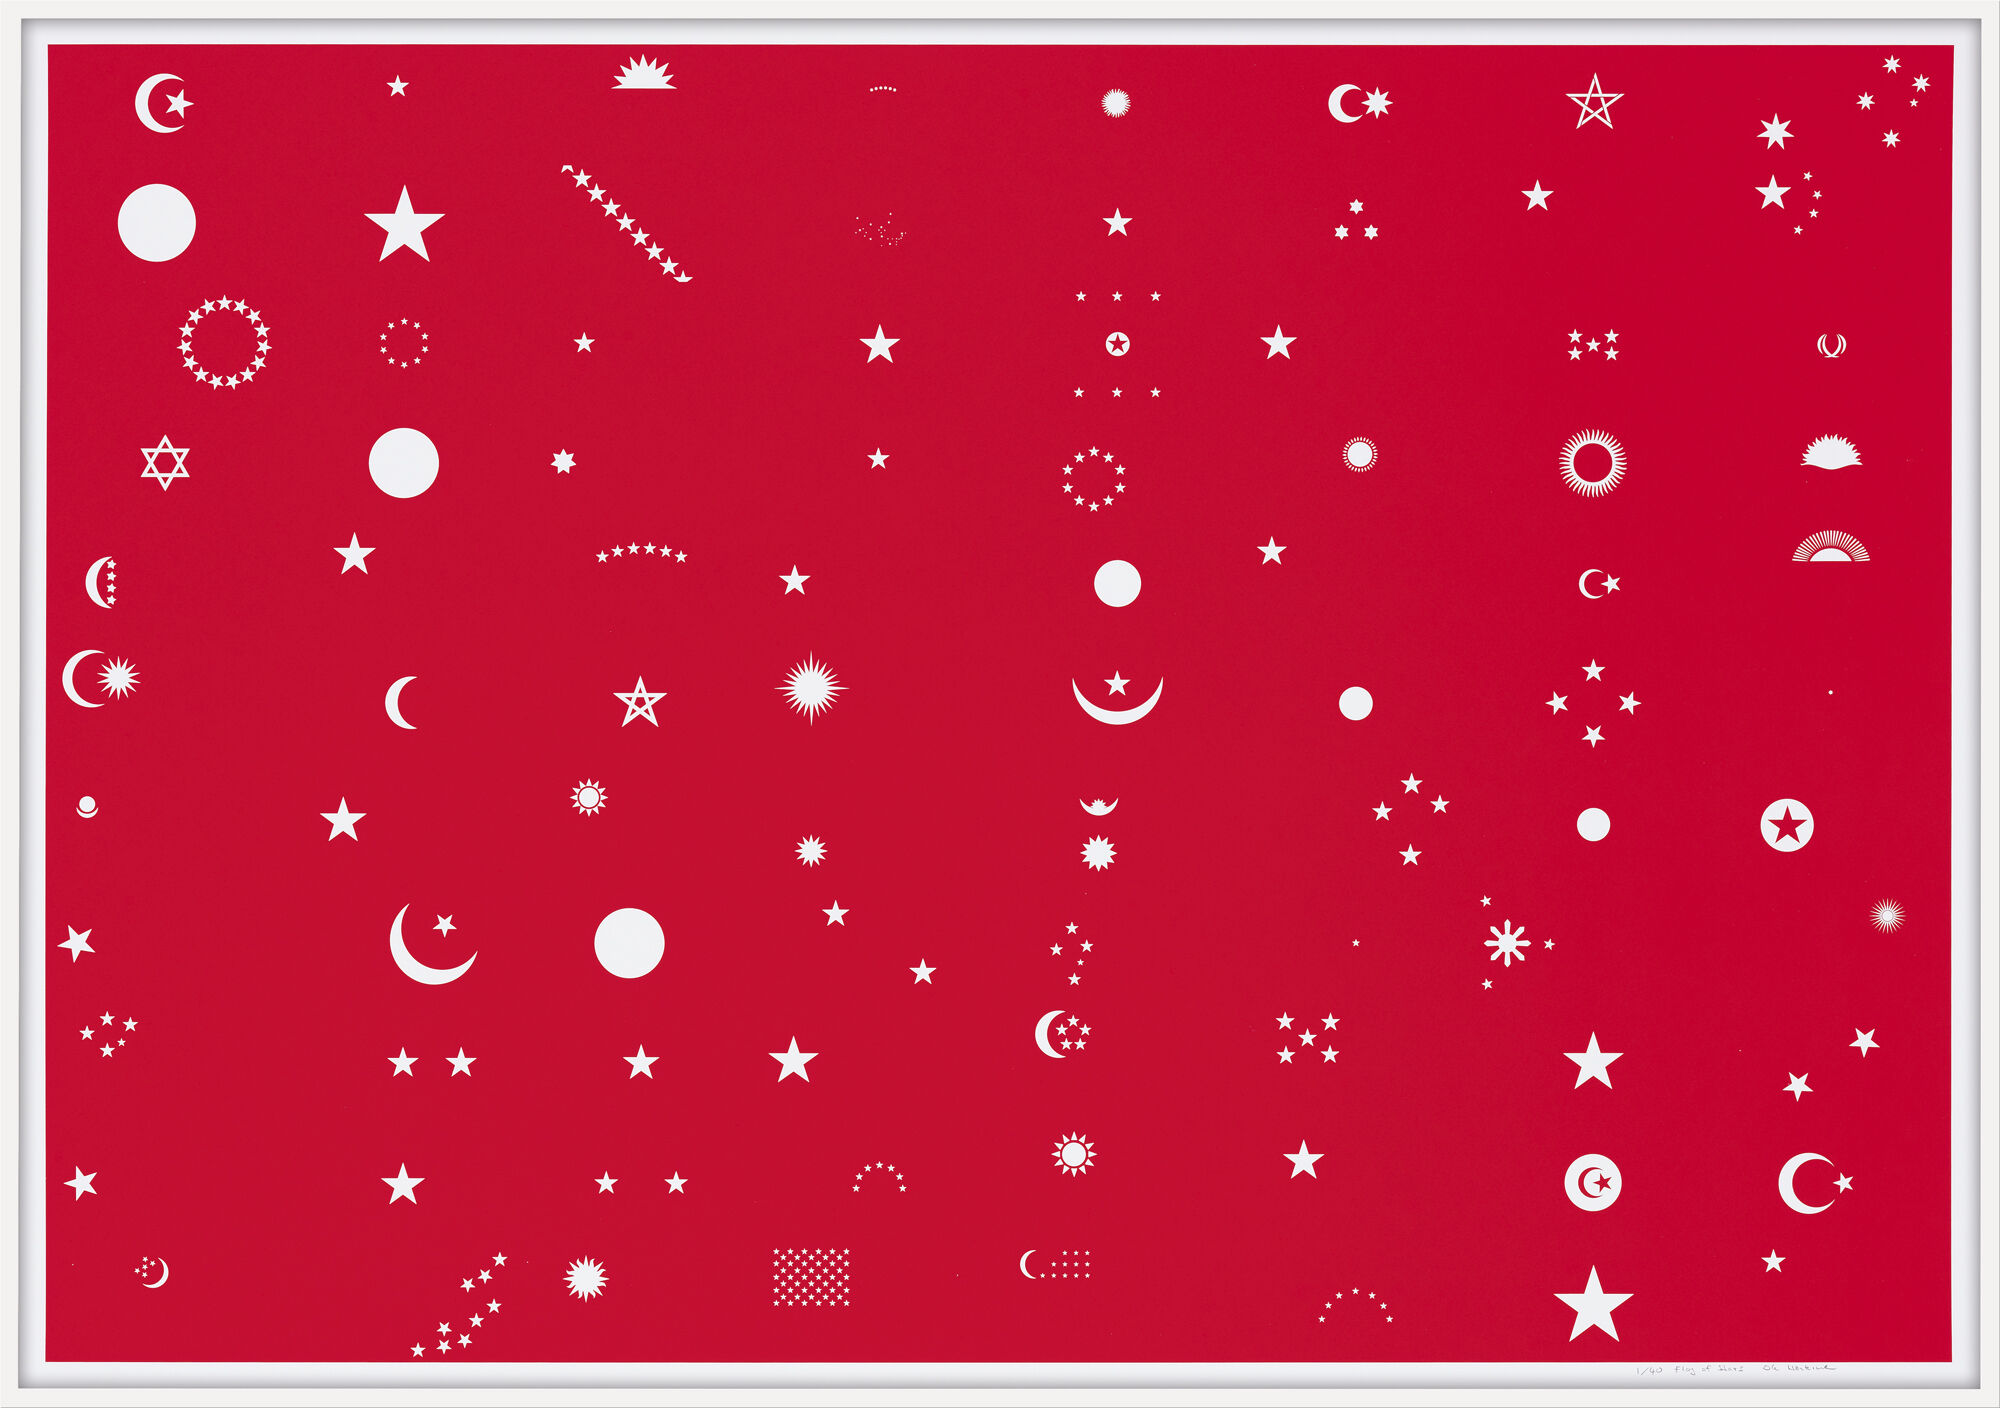 Picture "Flag of Stars (Sun, Moon, Stars)" (2016) by Ole Häntzschel